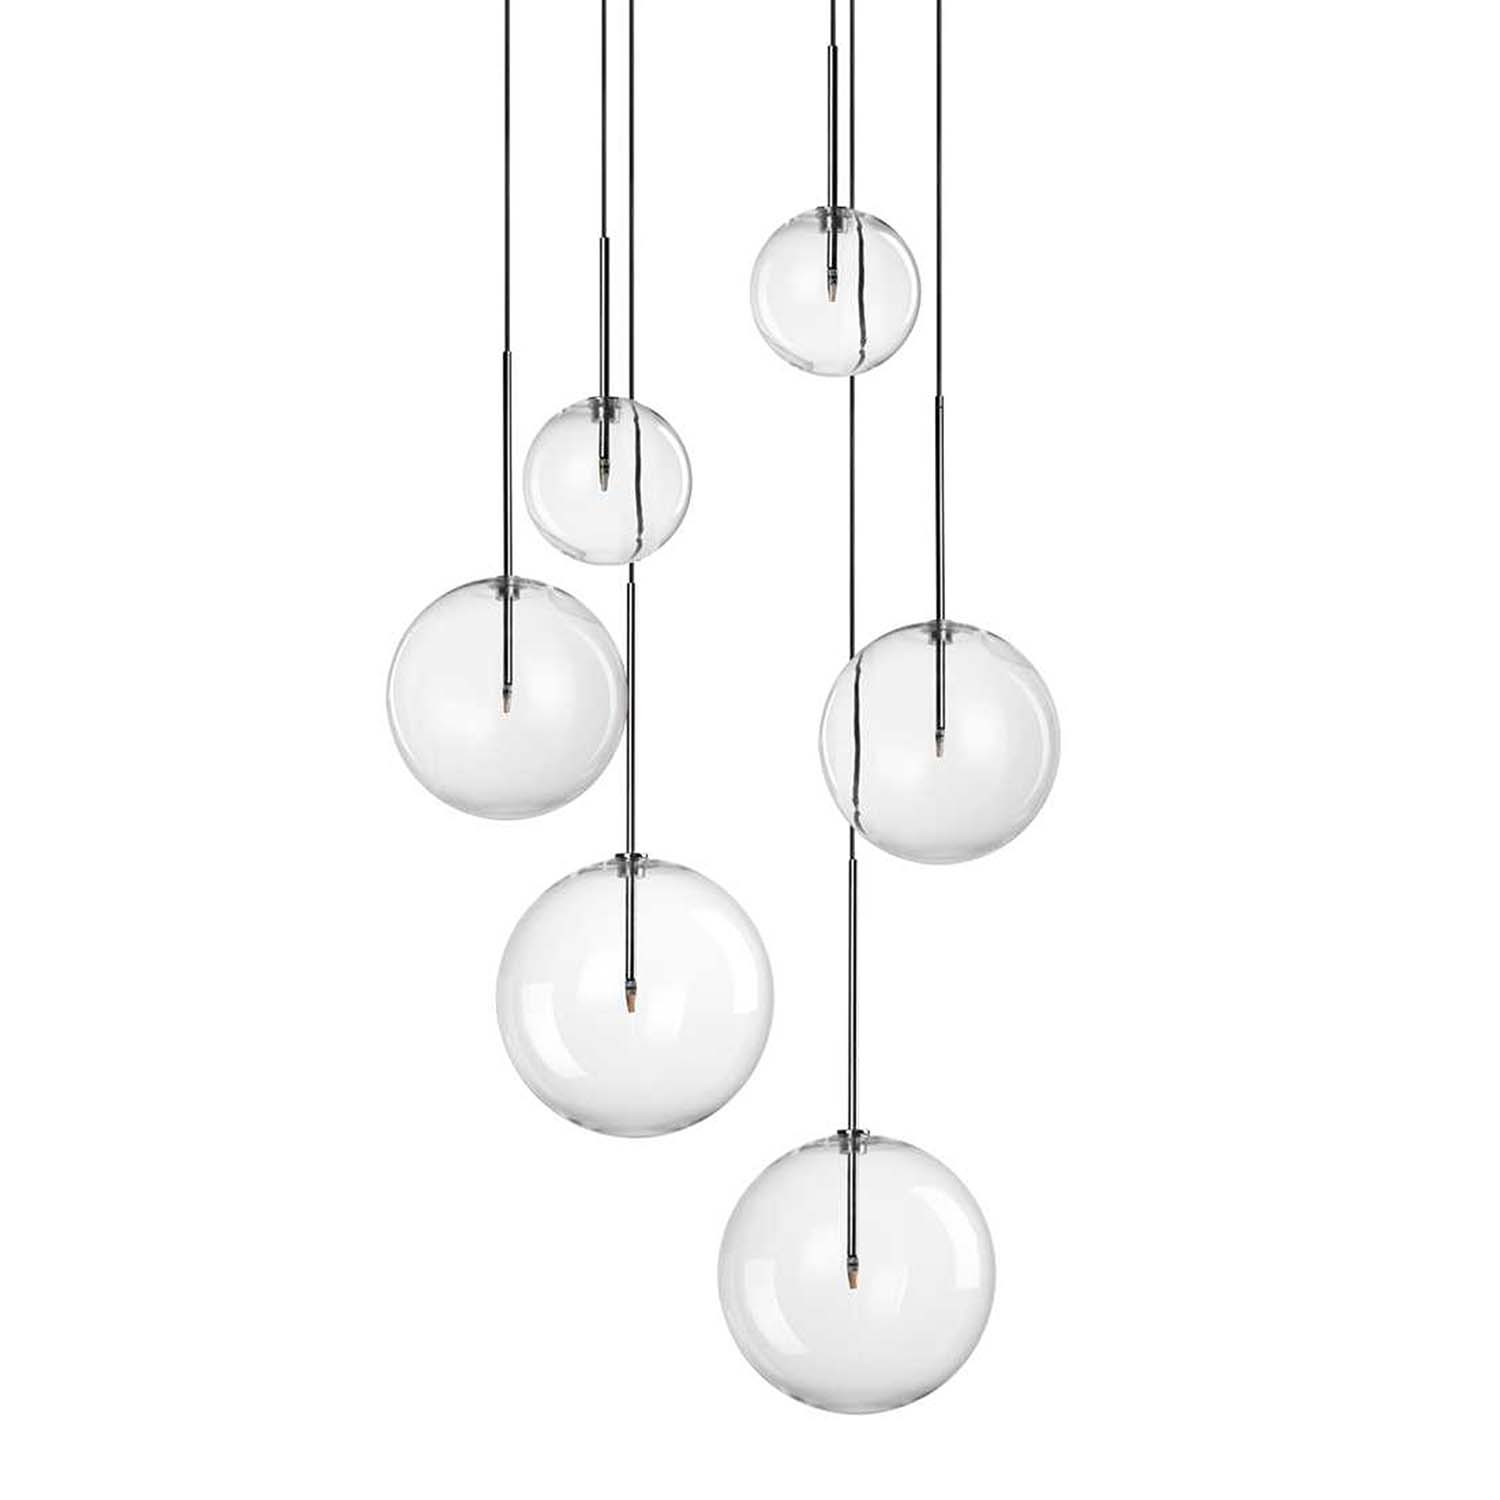 EQUINOXE - Transparent glass ball pendant light